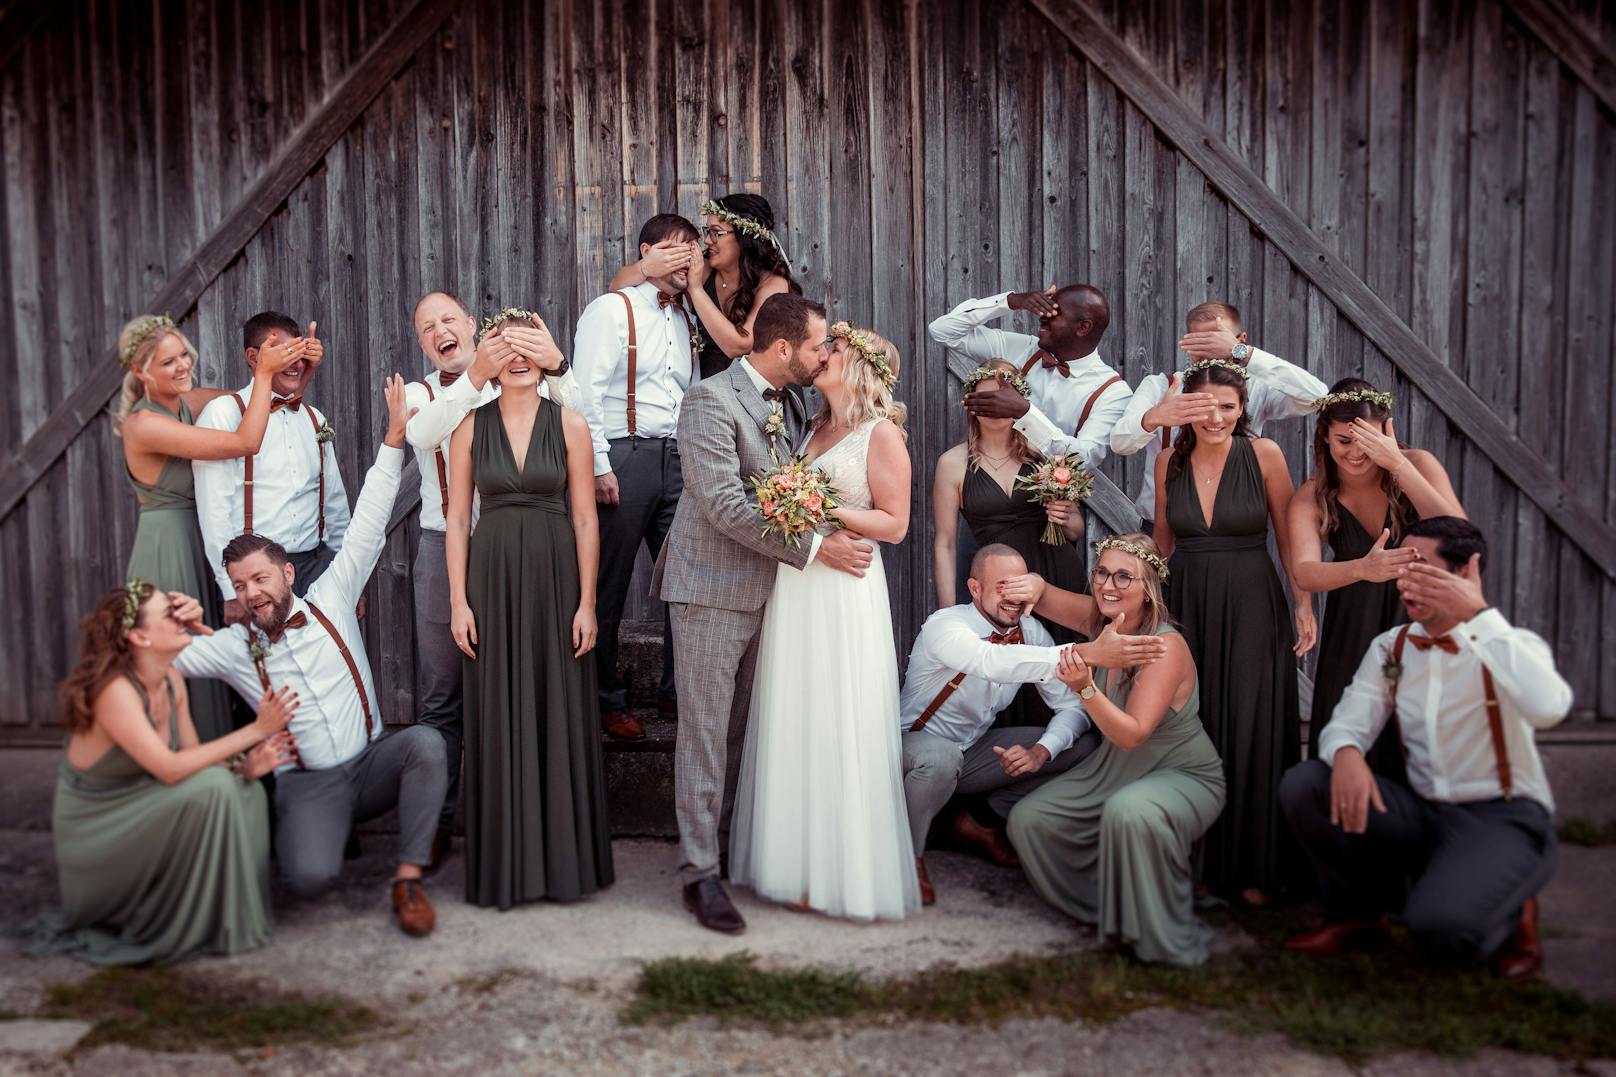 Das Portal "hochzeits-fotograf.info" prämierte die schönsten Hochzeitsfotos aus dem Vorjahr. Christoph Königsmayr aus Pressbaum (NÖ) siegte in der Kategorie "Kreativstes Gruppenfoto".